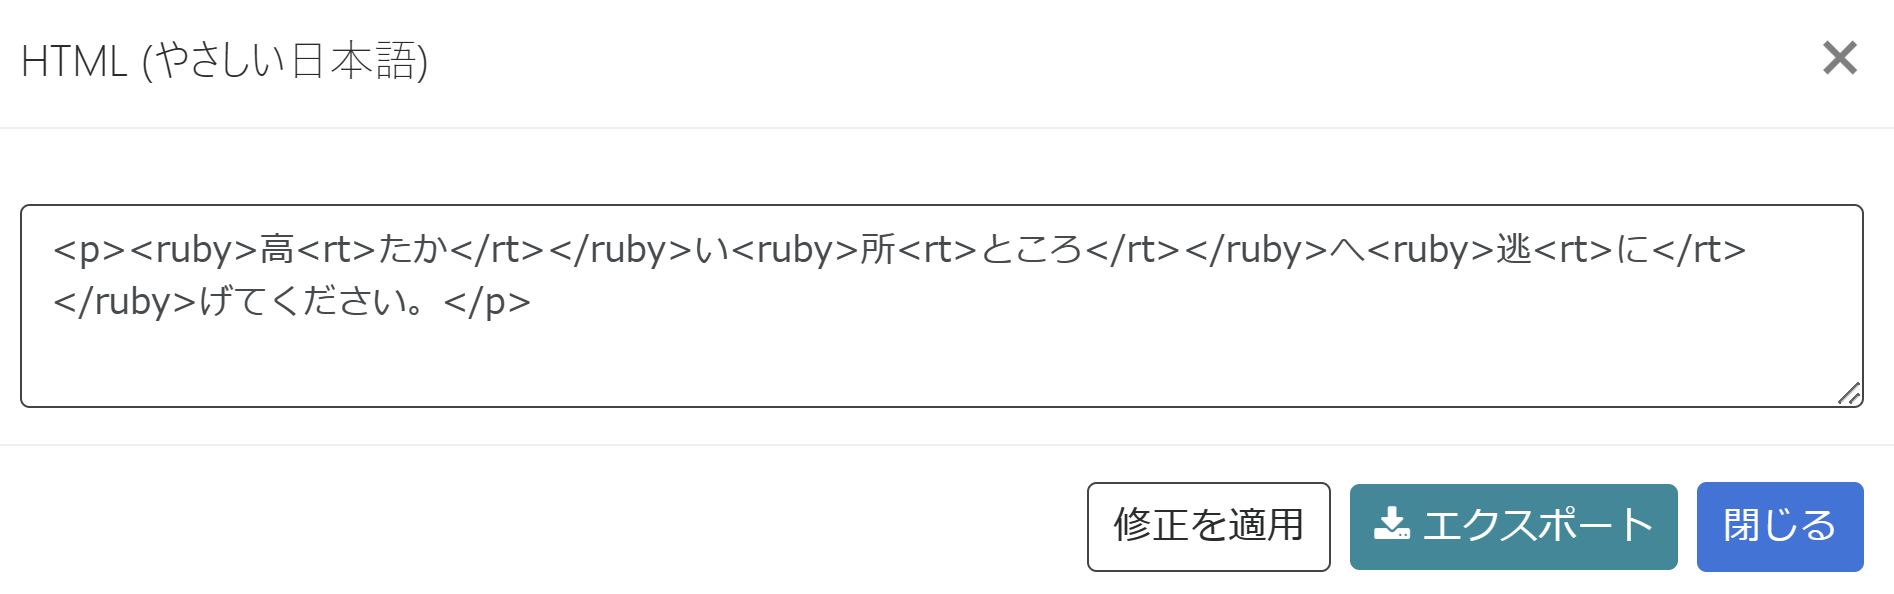 やさしい日本語エディタで「HTMLを表示」ボタンを押した結果